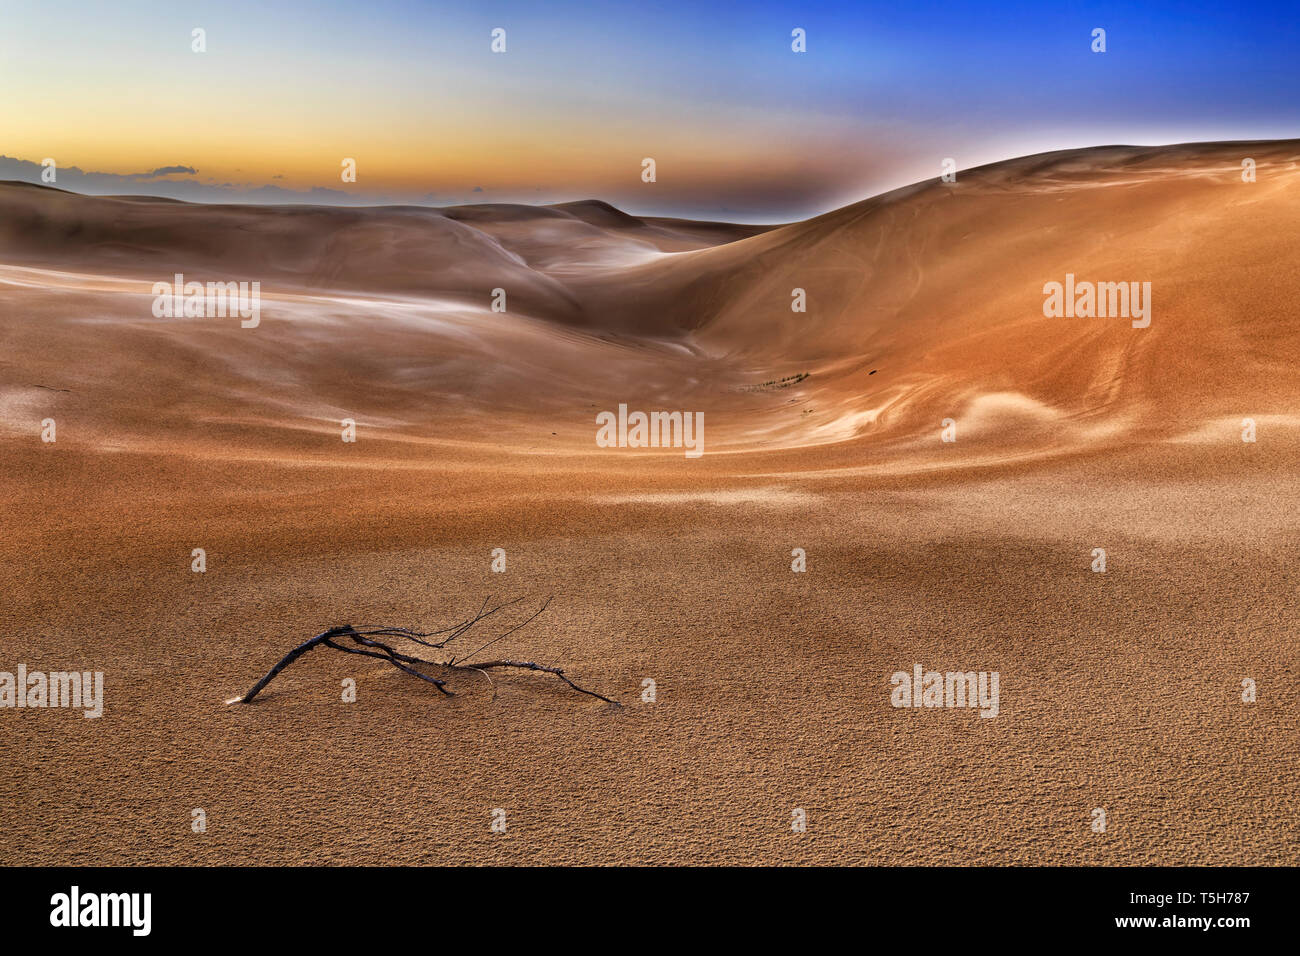 Rama de árbol seco en yermo Desierto de arena en la parte de las dunas de arena de Stockton Beach al amanecer bajo el cielo oscuro. Foto de stock